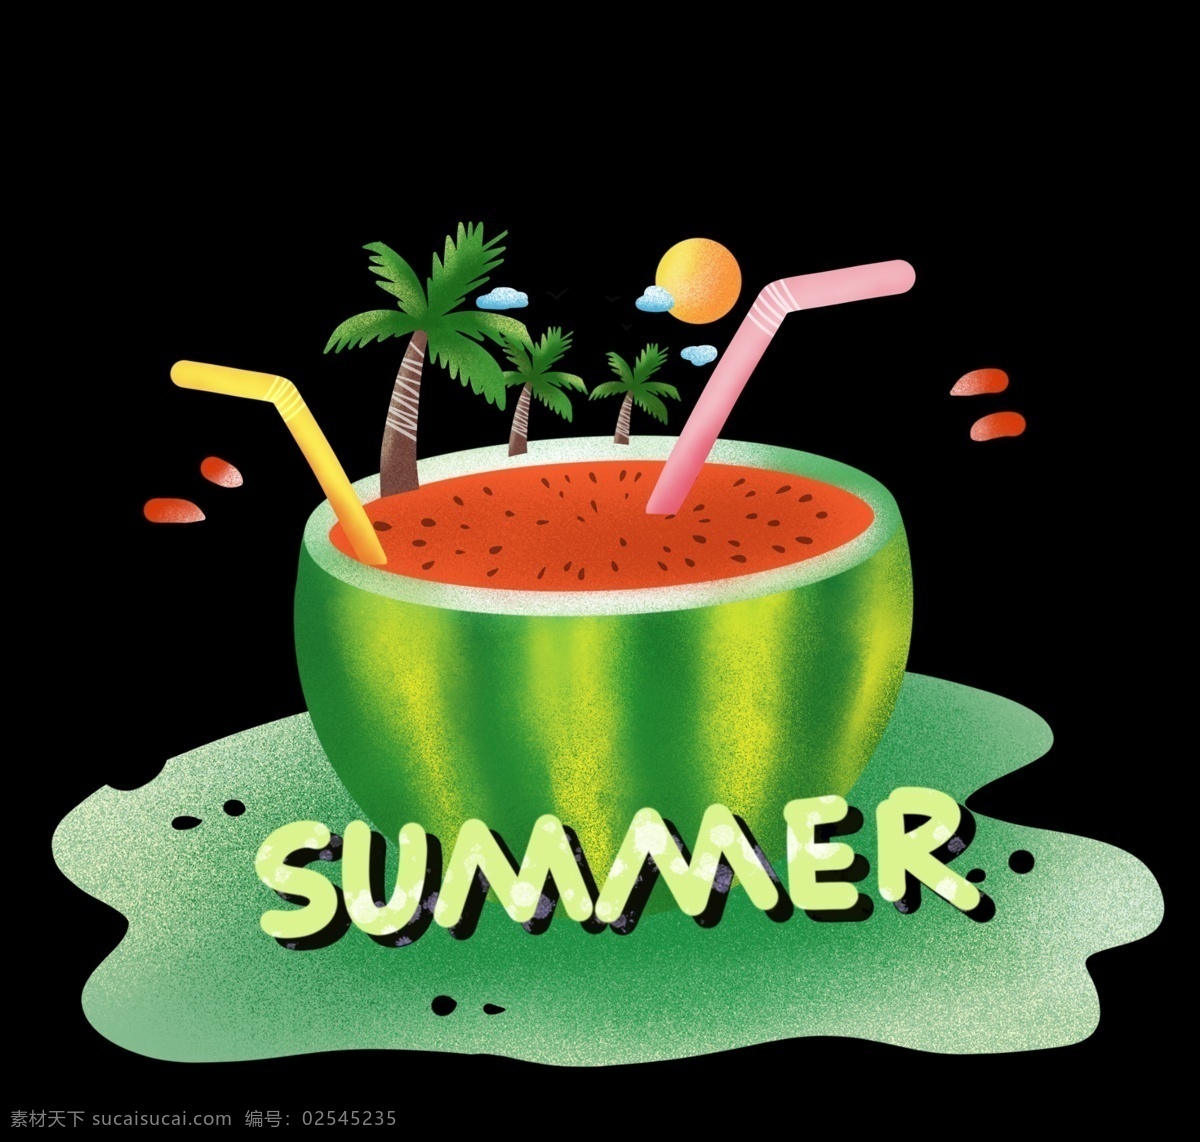 夏日 海报 西瓜 免 抠 图 夏日海报 清凉夏日 椰子树 西瓜汁 夏日饮料